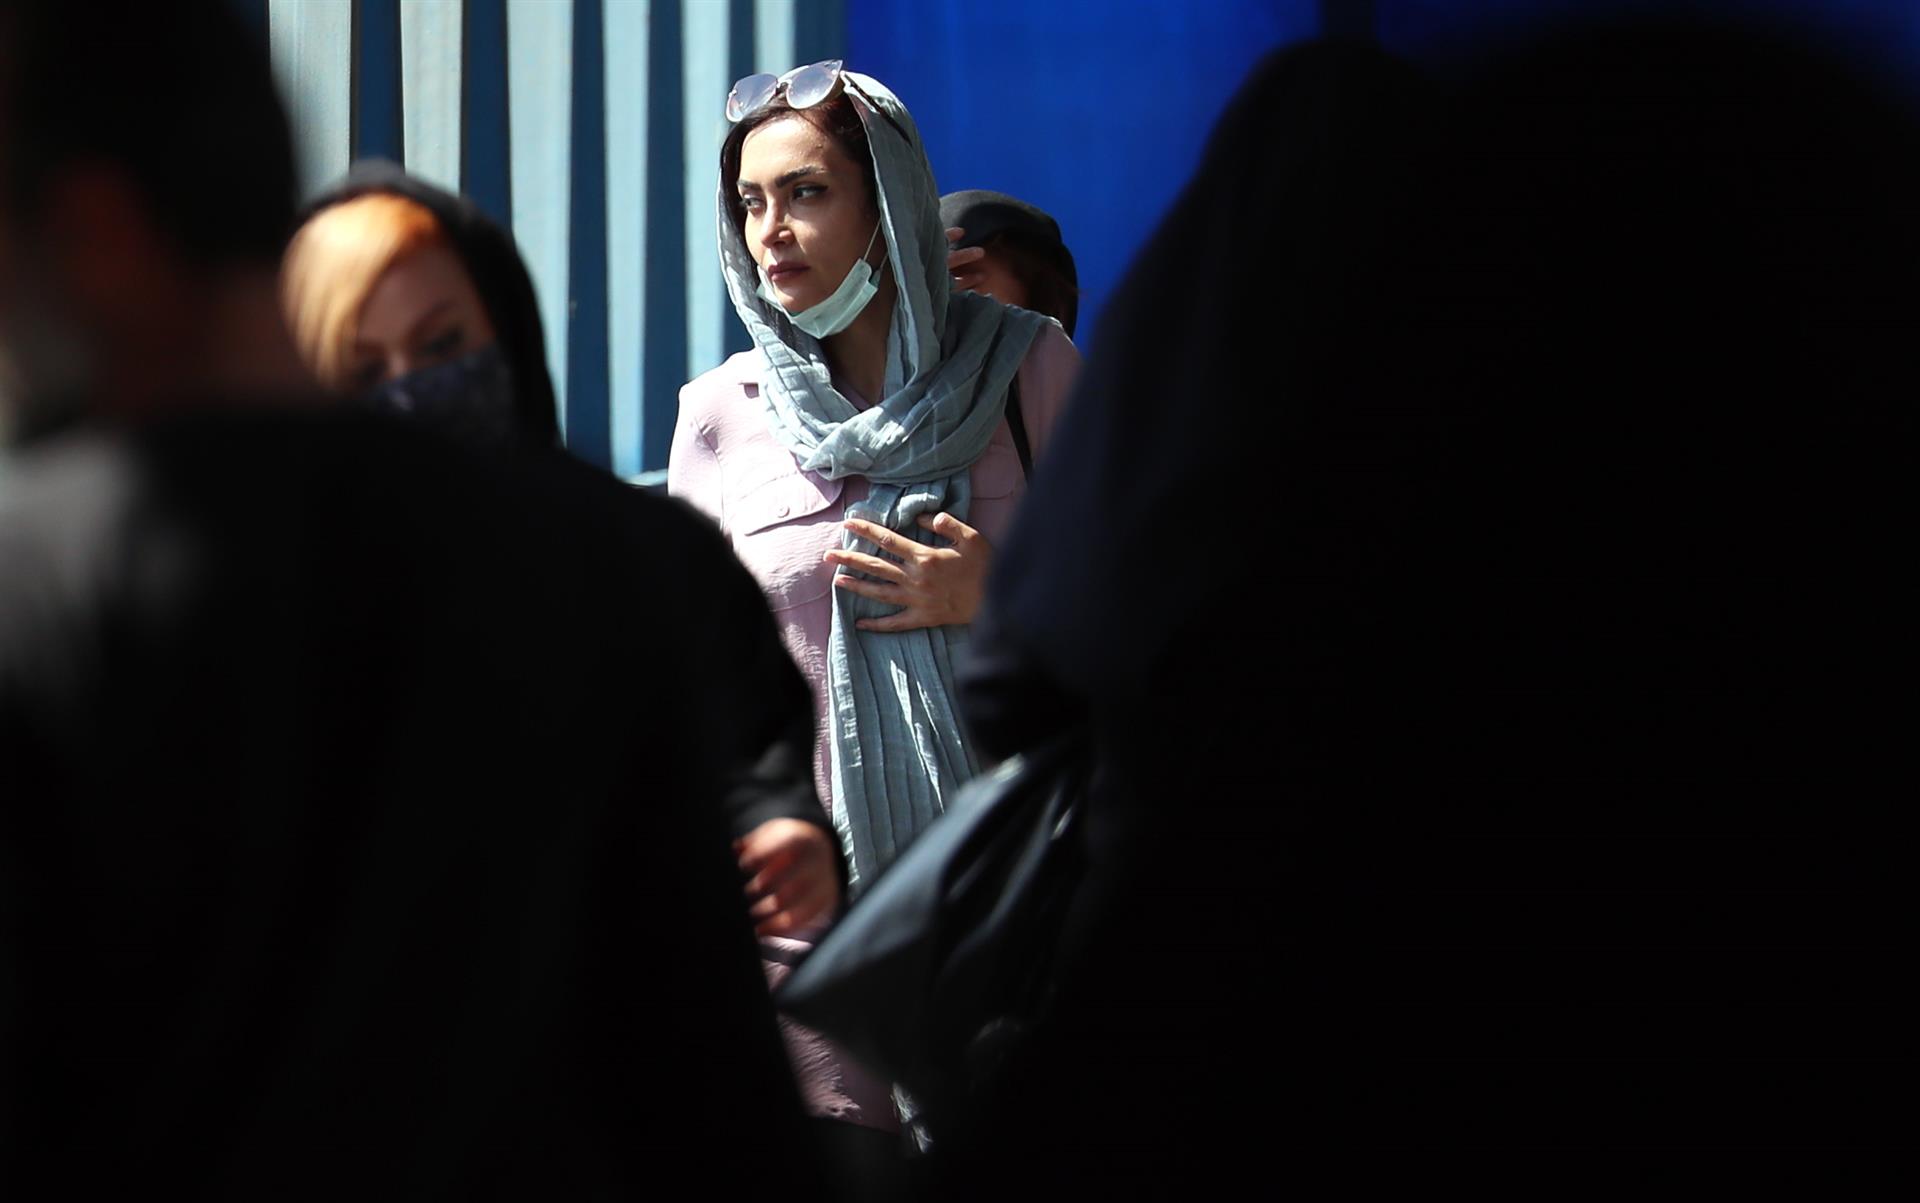 Teherán (Irán), 19/09/2022.- Mujeres iraníes pasan por una calle, en Teherán, Irán, este lunes. Las protestas estallaron en Saqez, ciudad natal de Amini, durante su funeral el 17 de septiembre. EFE/ABEDIN TAHERKENAREH